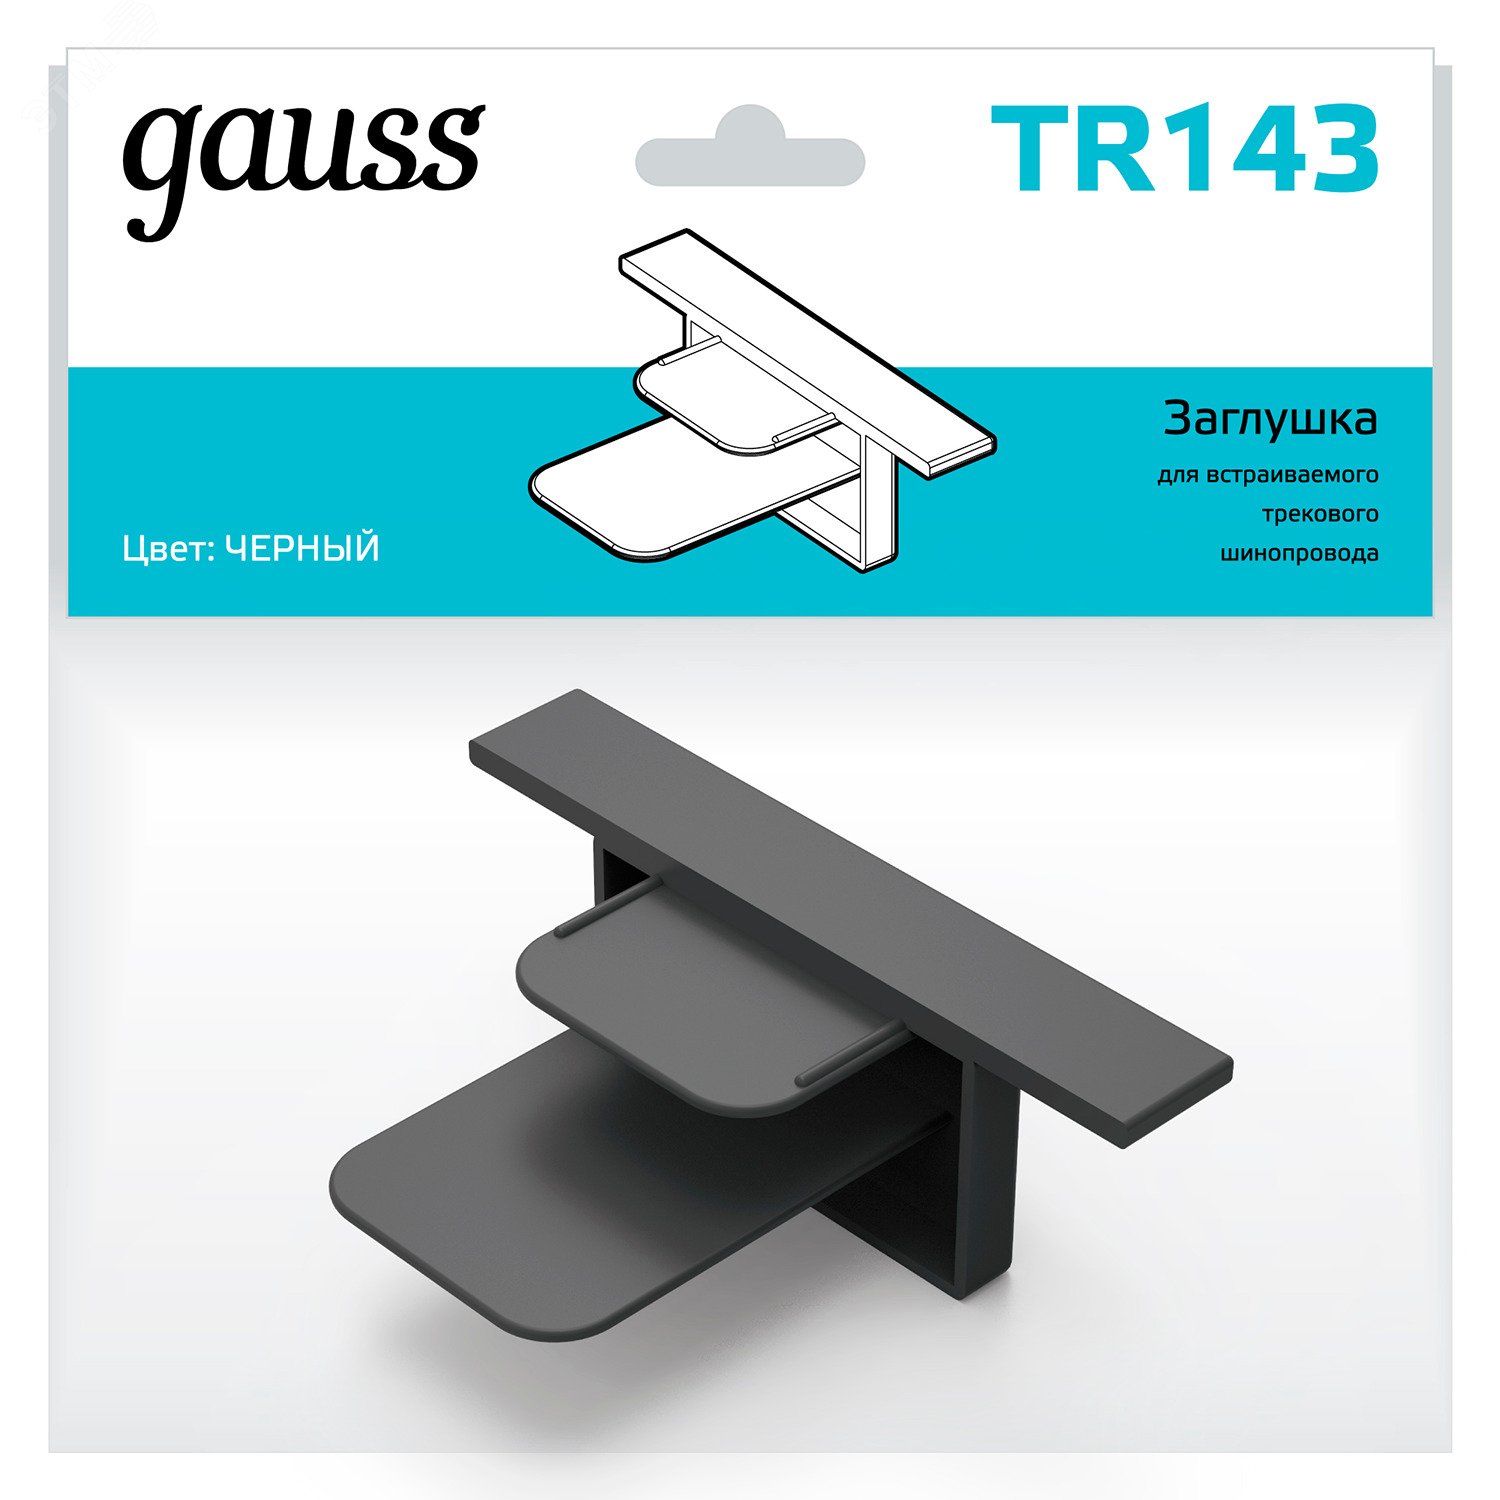 Заглушка для встраиваемого трекового шинопровода черный однофазный Gauss TR143 GAUSS - превью 4